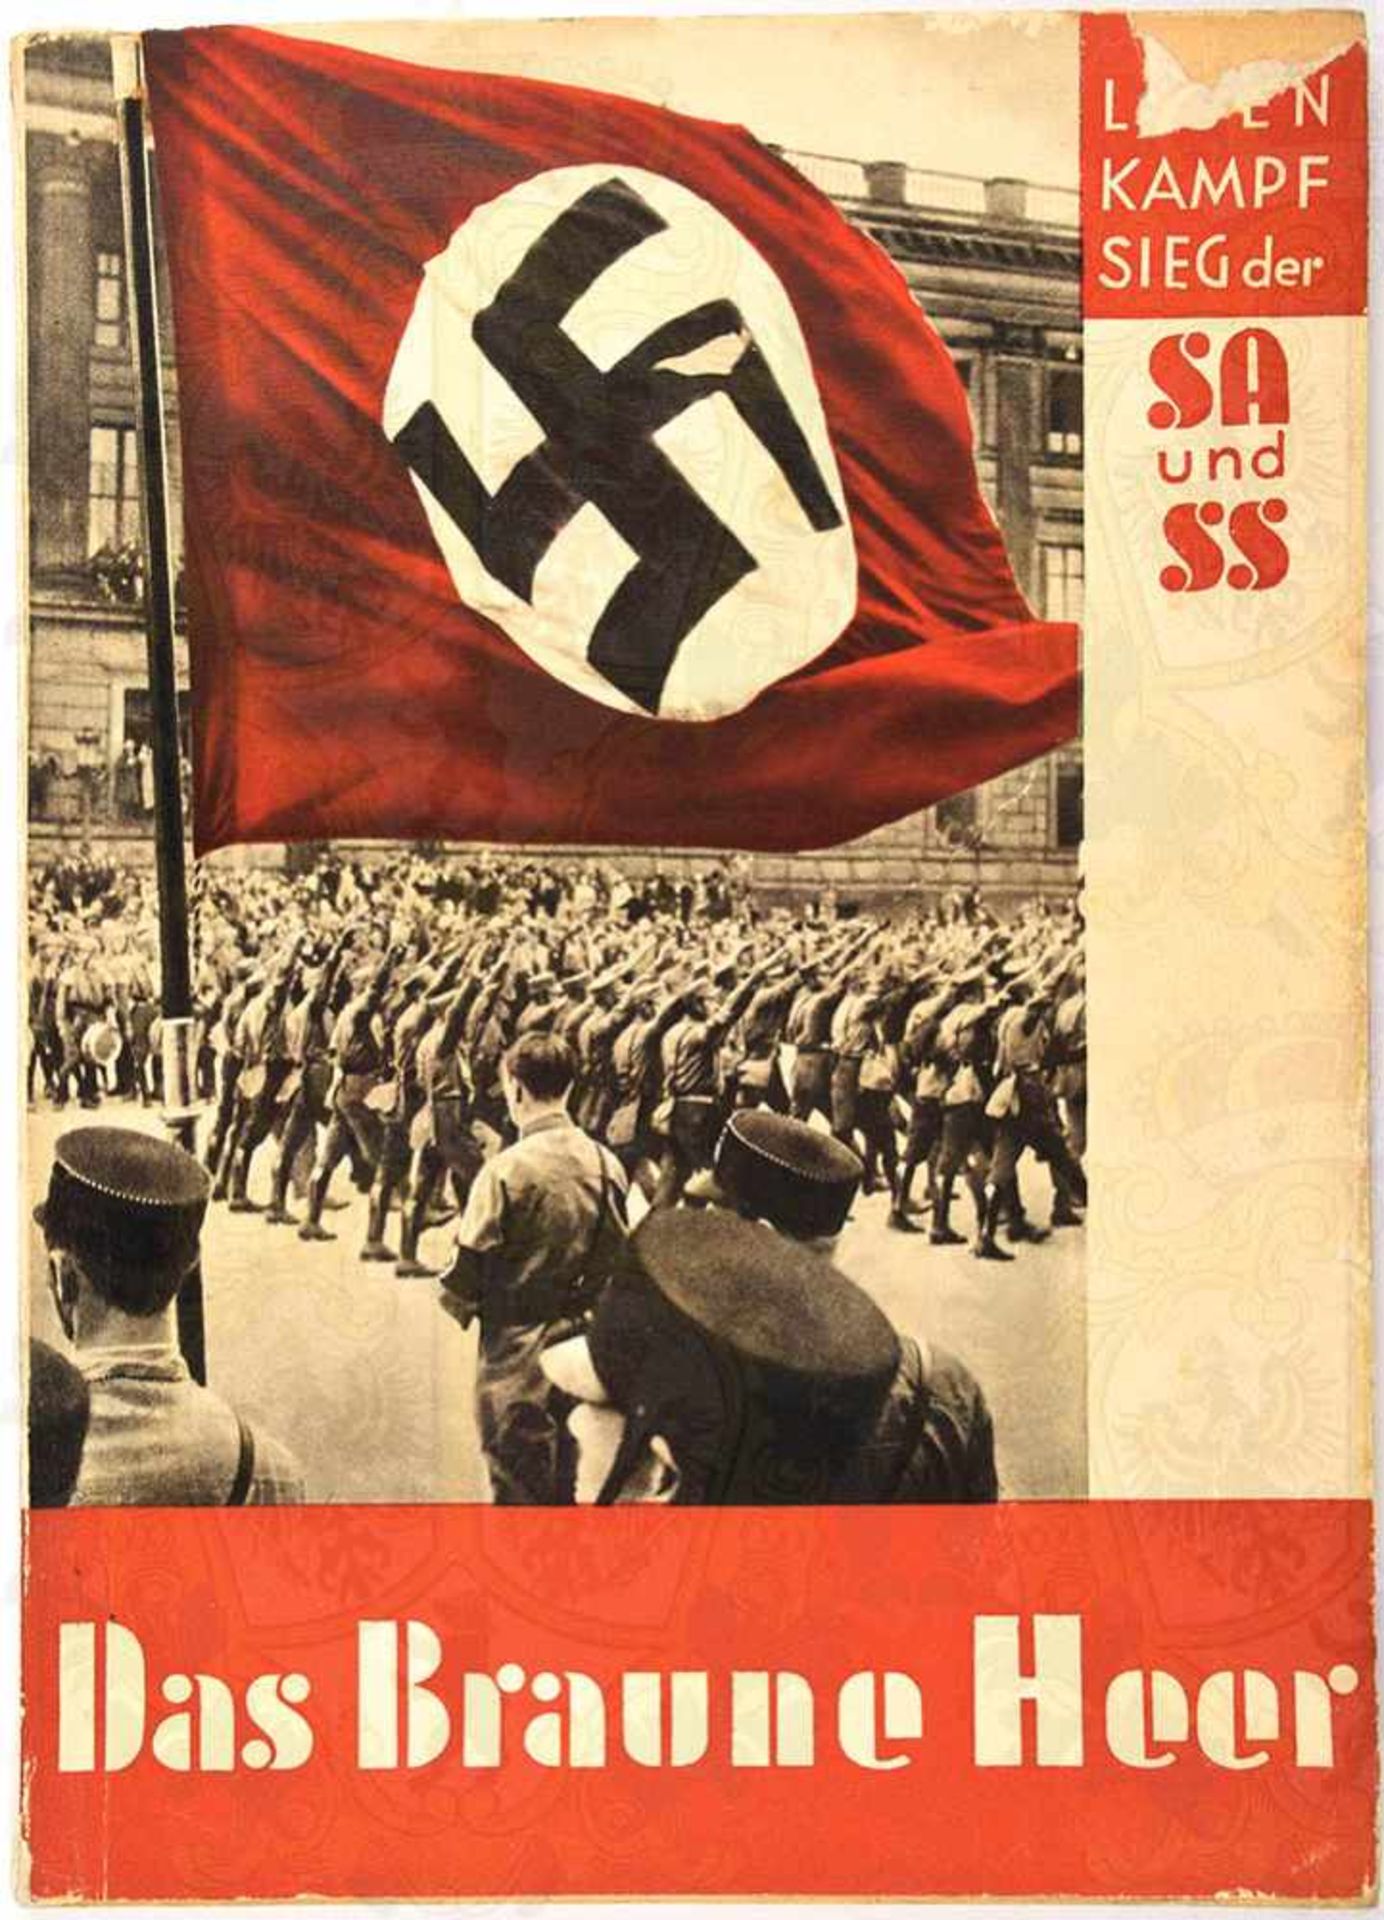 DAS BRAUNE HEER, „Kampf u. Sieg d. SA u. SS“, Hoffmann-Fotoband, 1. Auflage, Bln. 1932, 15 Text-